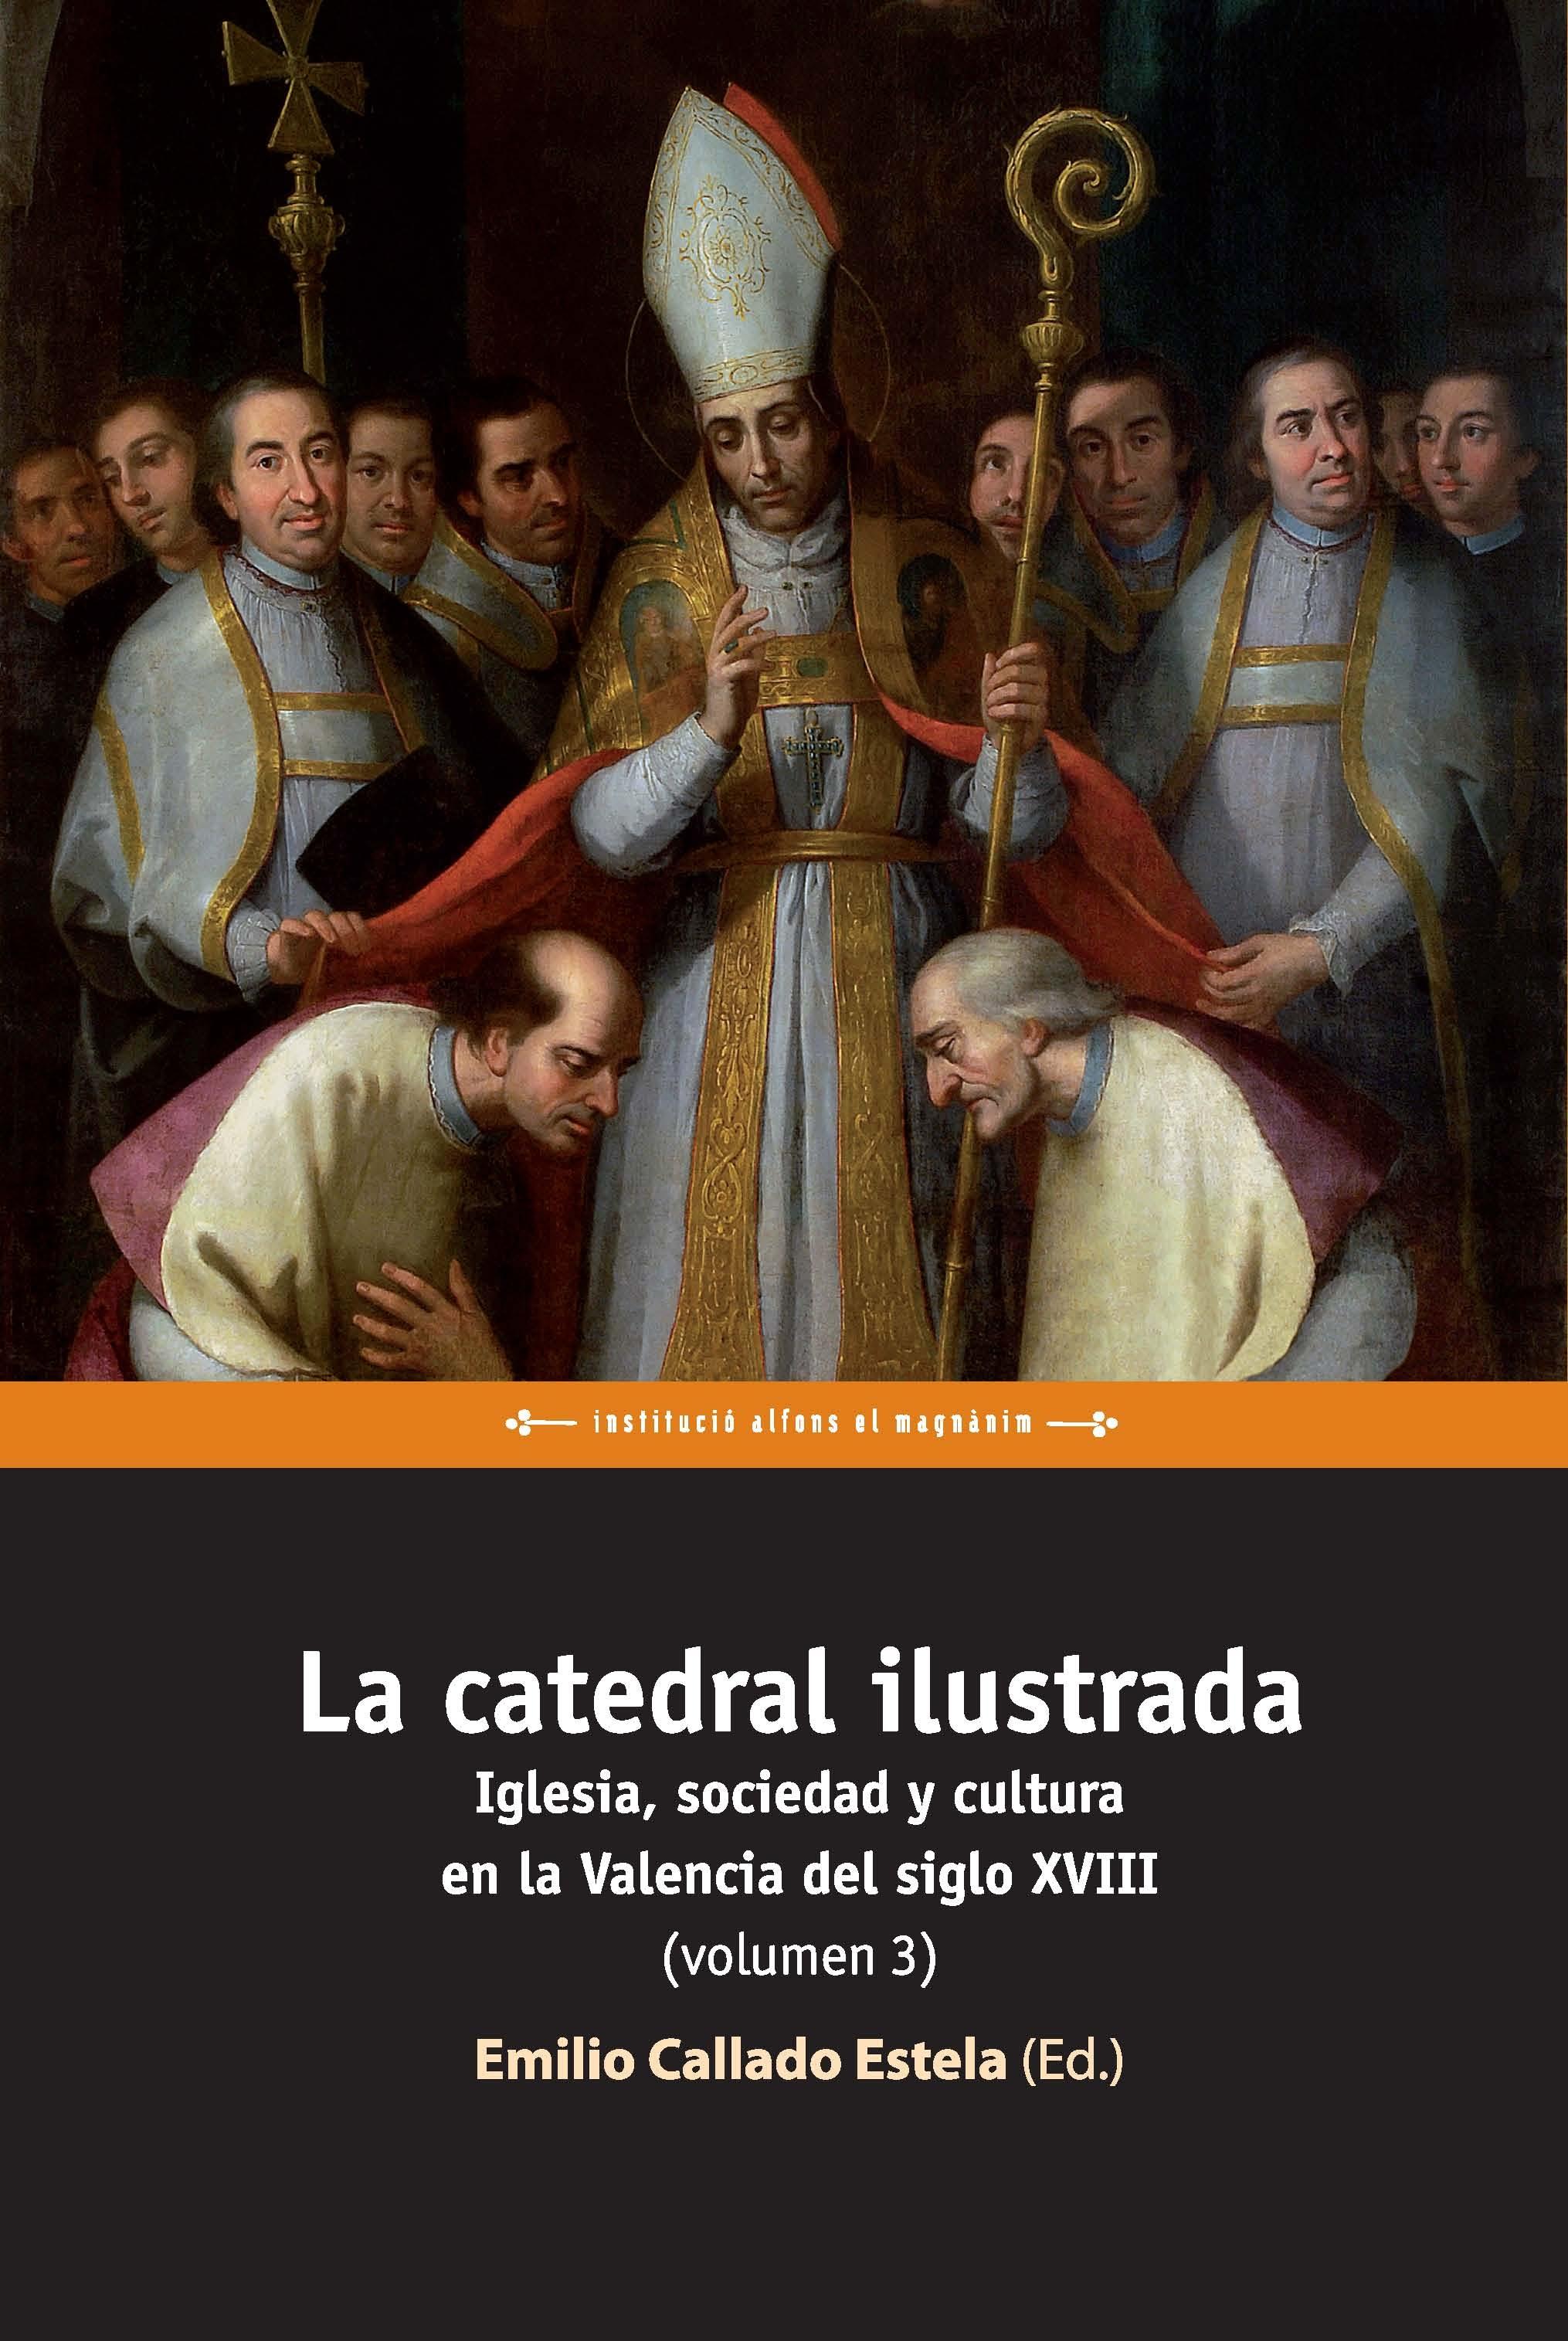 La catedral ilustrada: Iglesia, sociedad y cultura en la Valencia del siglo XVIII (Vol 3)